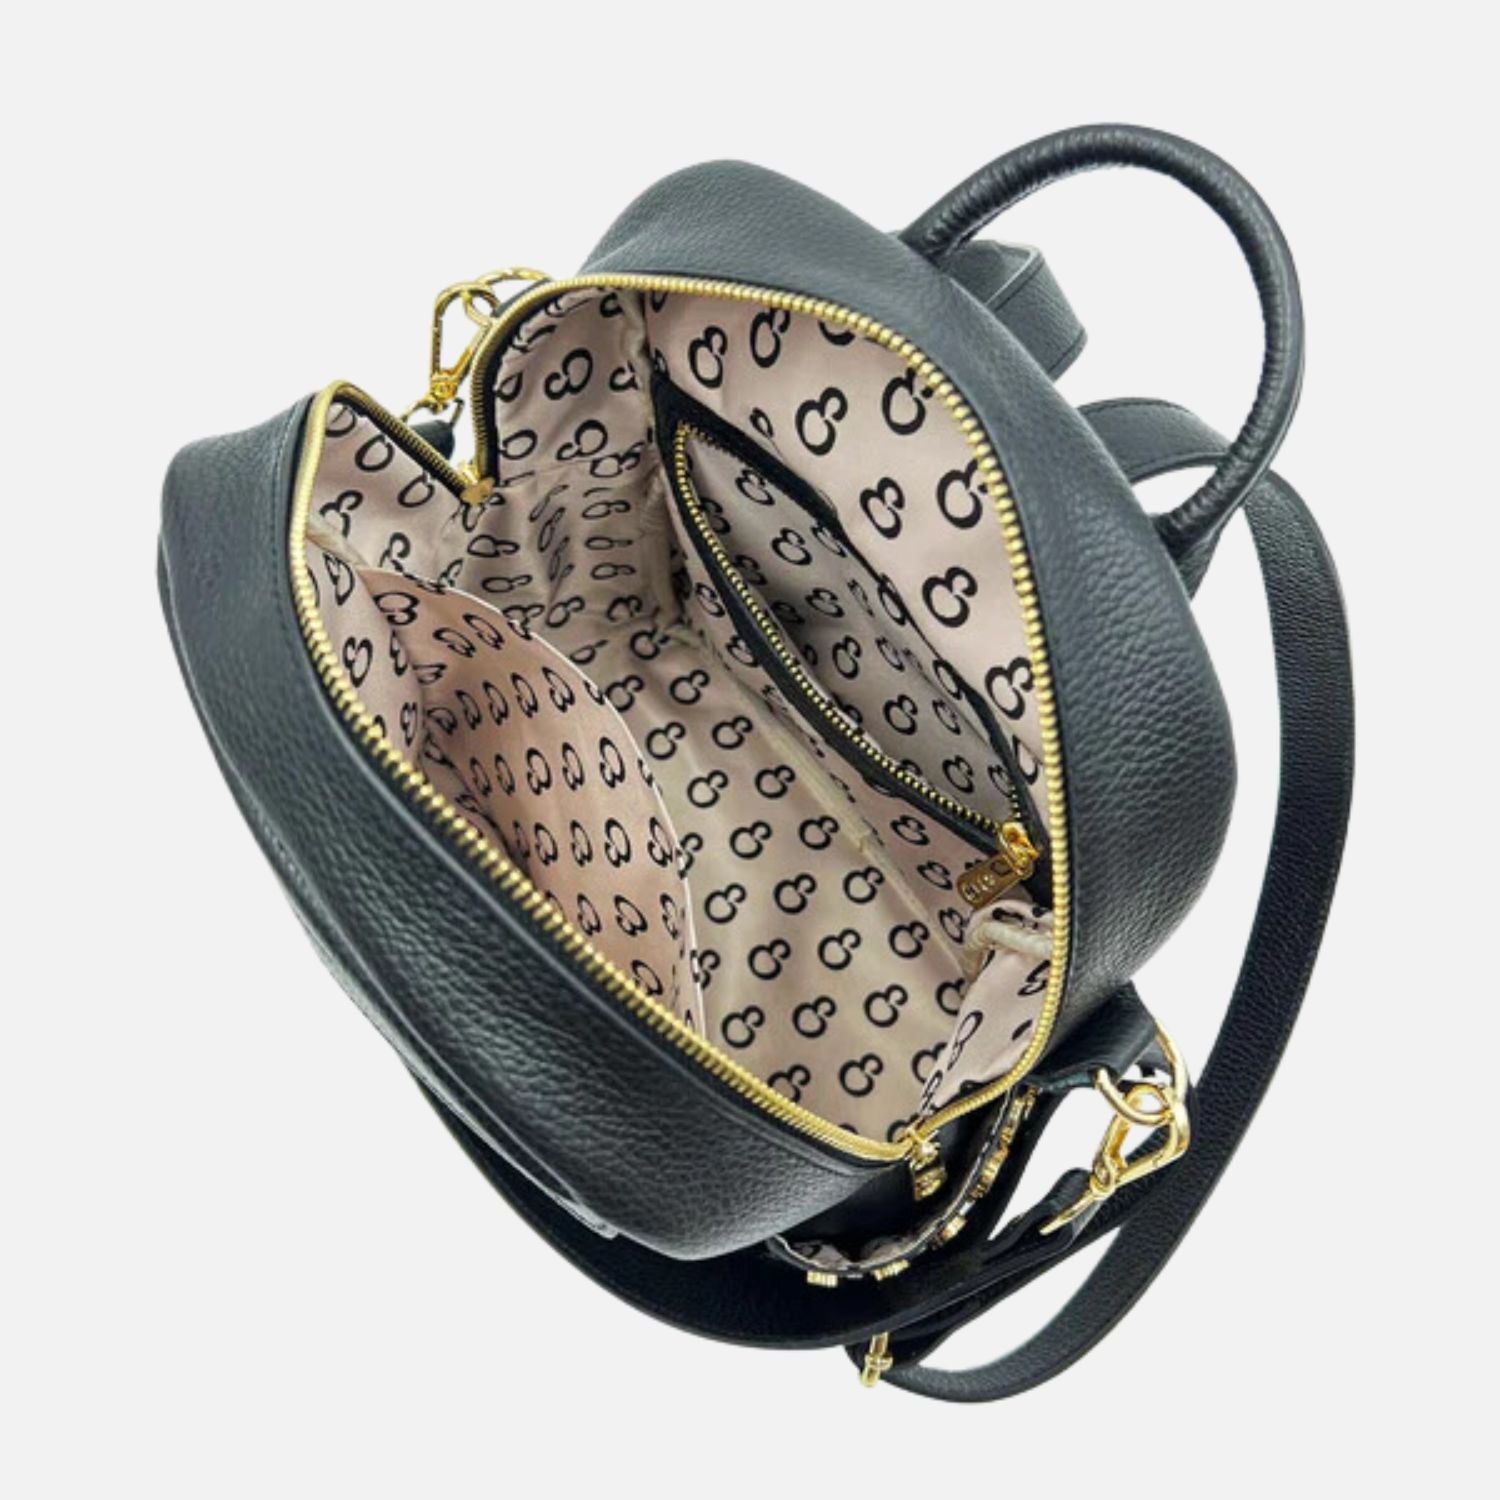 Niki Black – Backpack – Hammered Leather – Gold